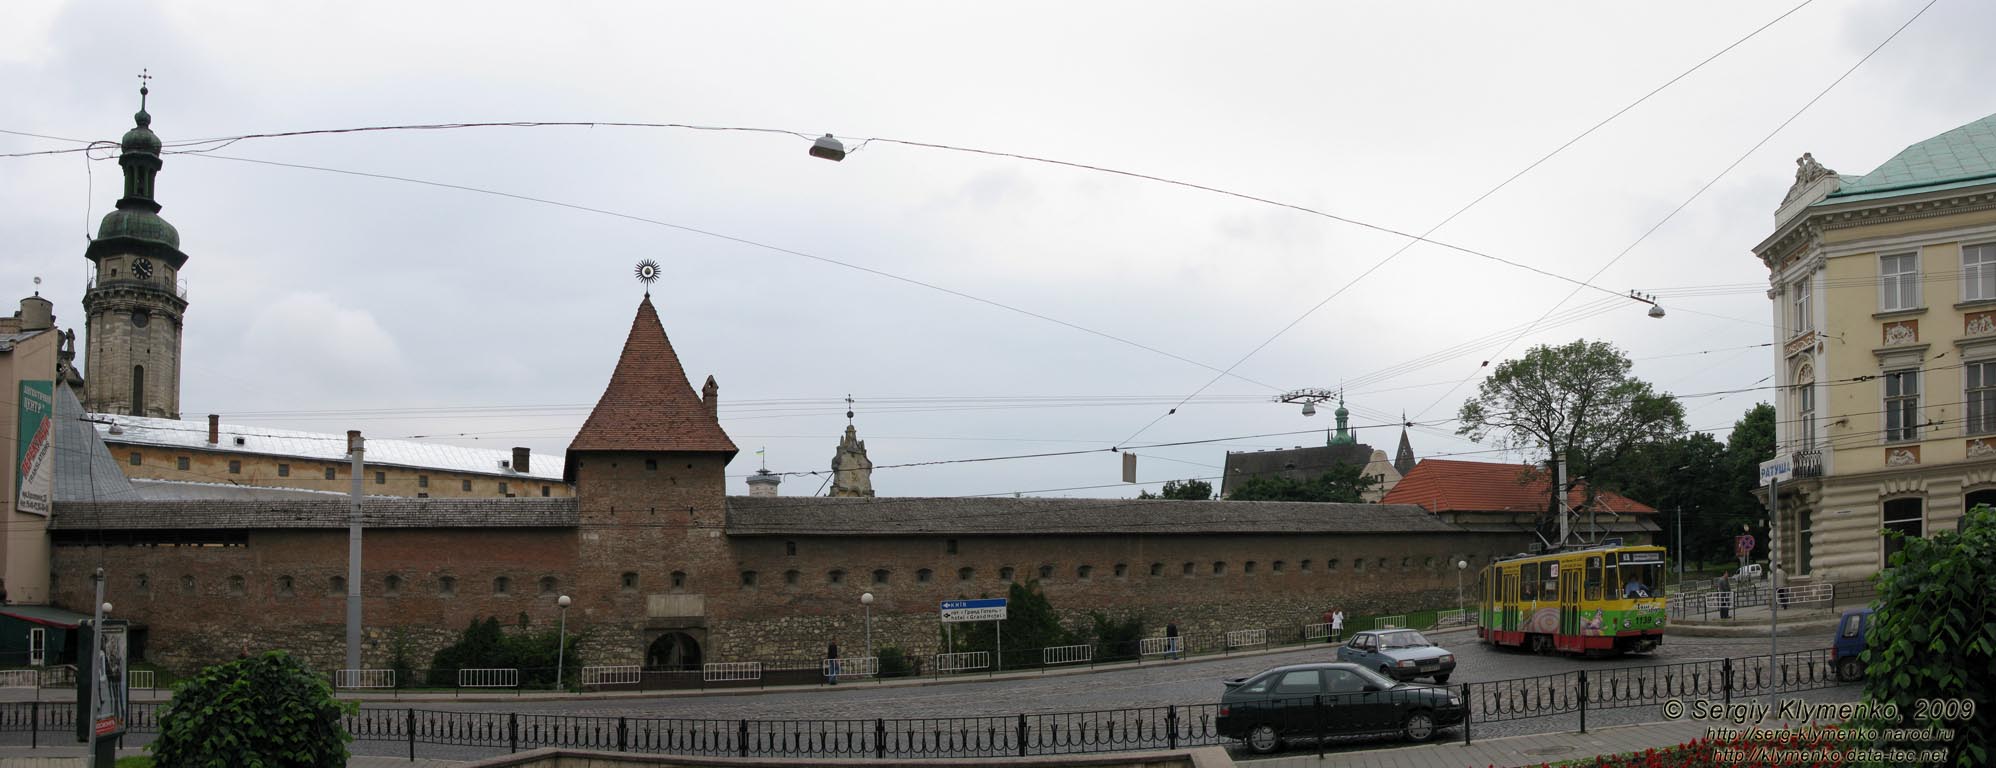 Львов. Фото. Панорама Мытной ("таможенной") площади. Вид на монастырь бернардинцев.